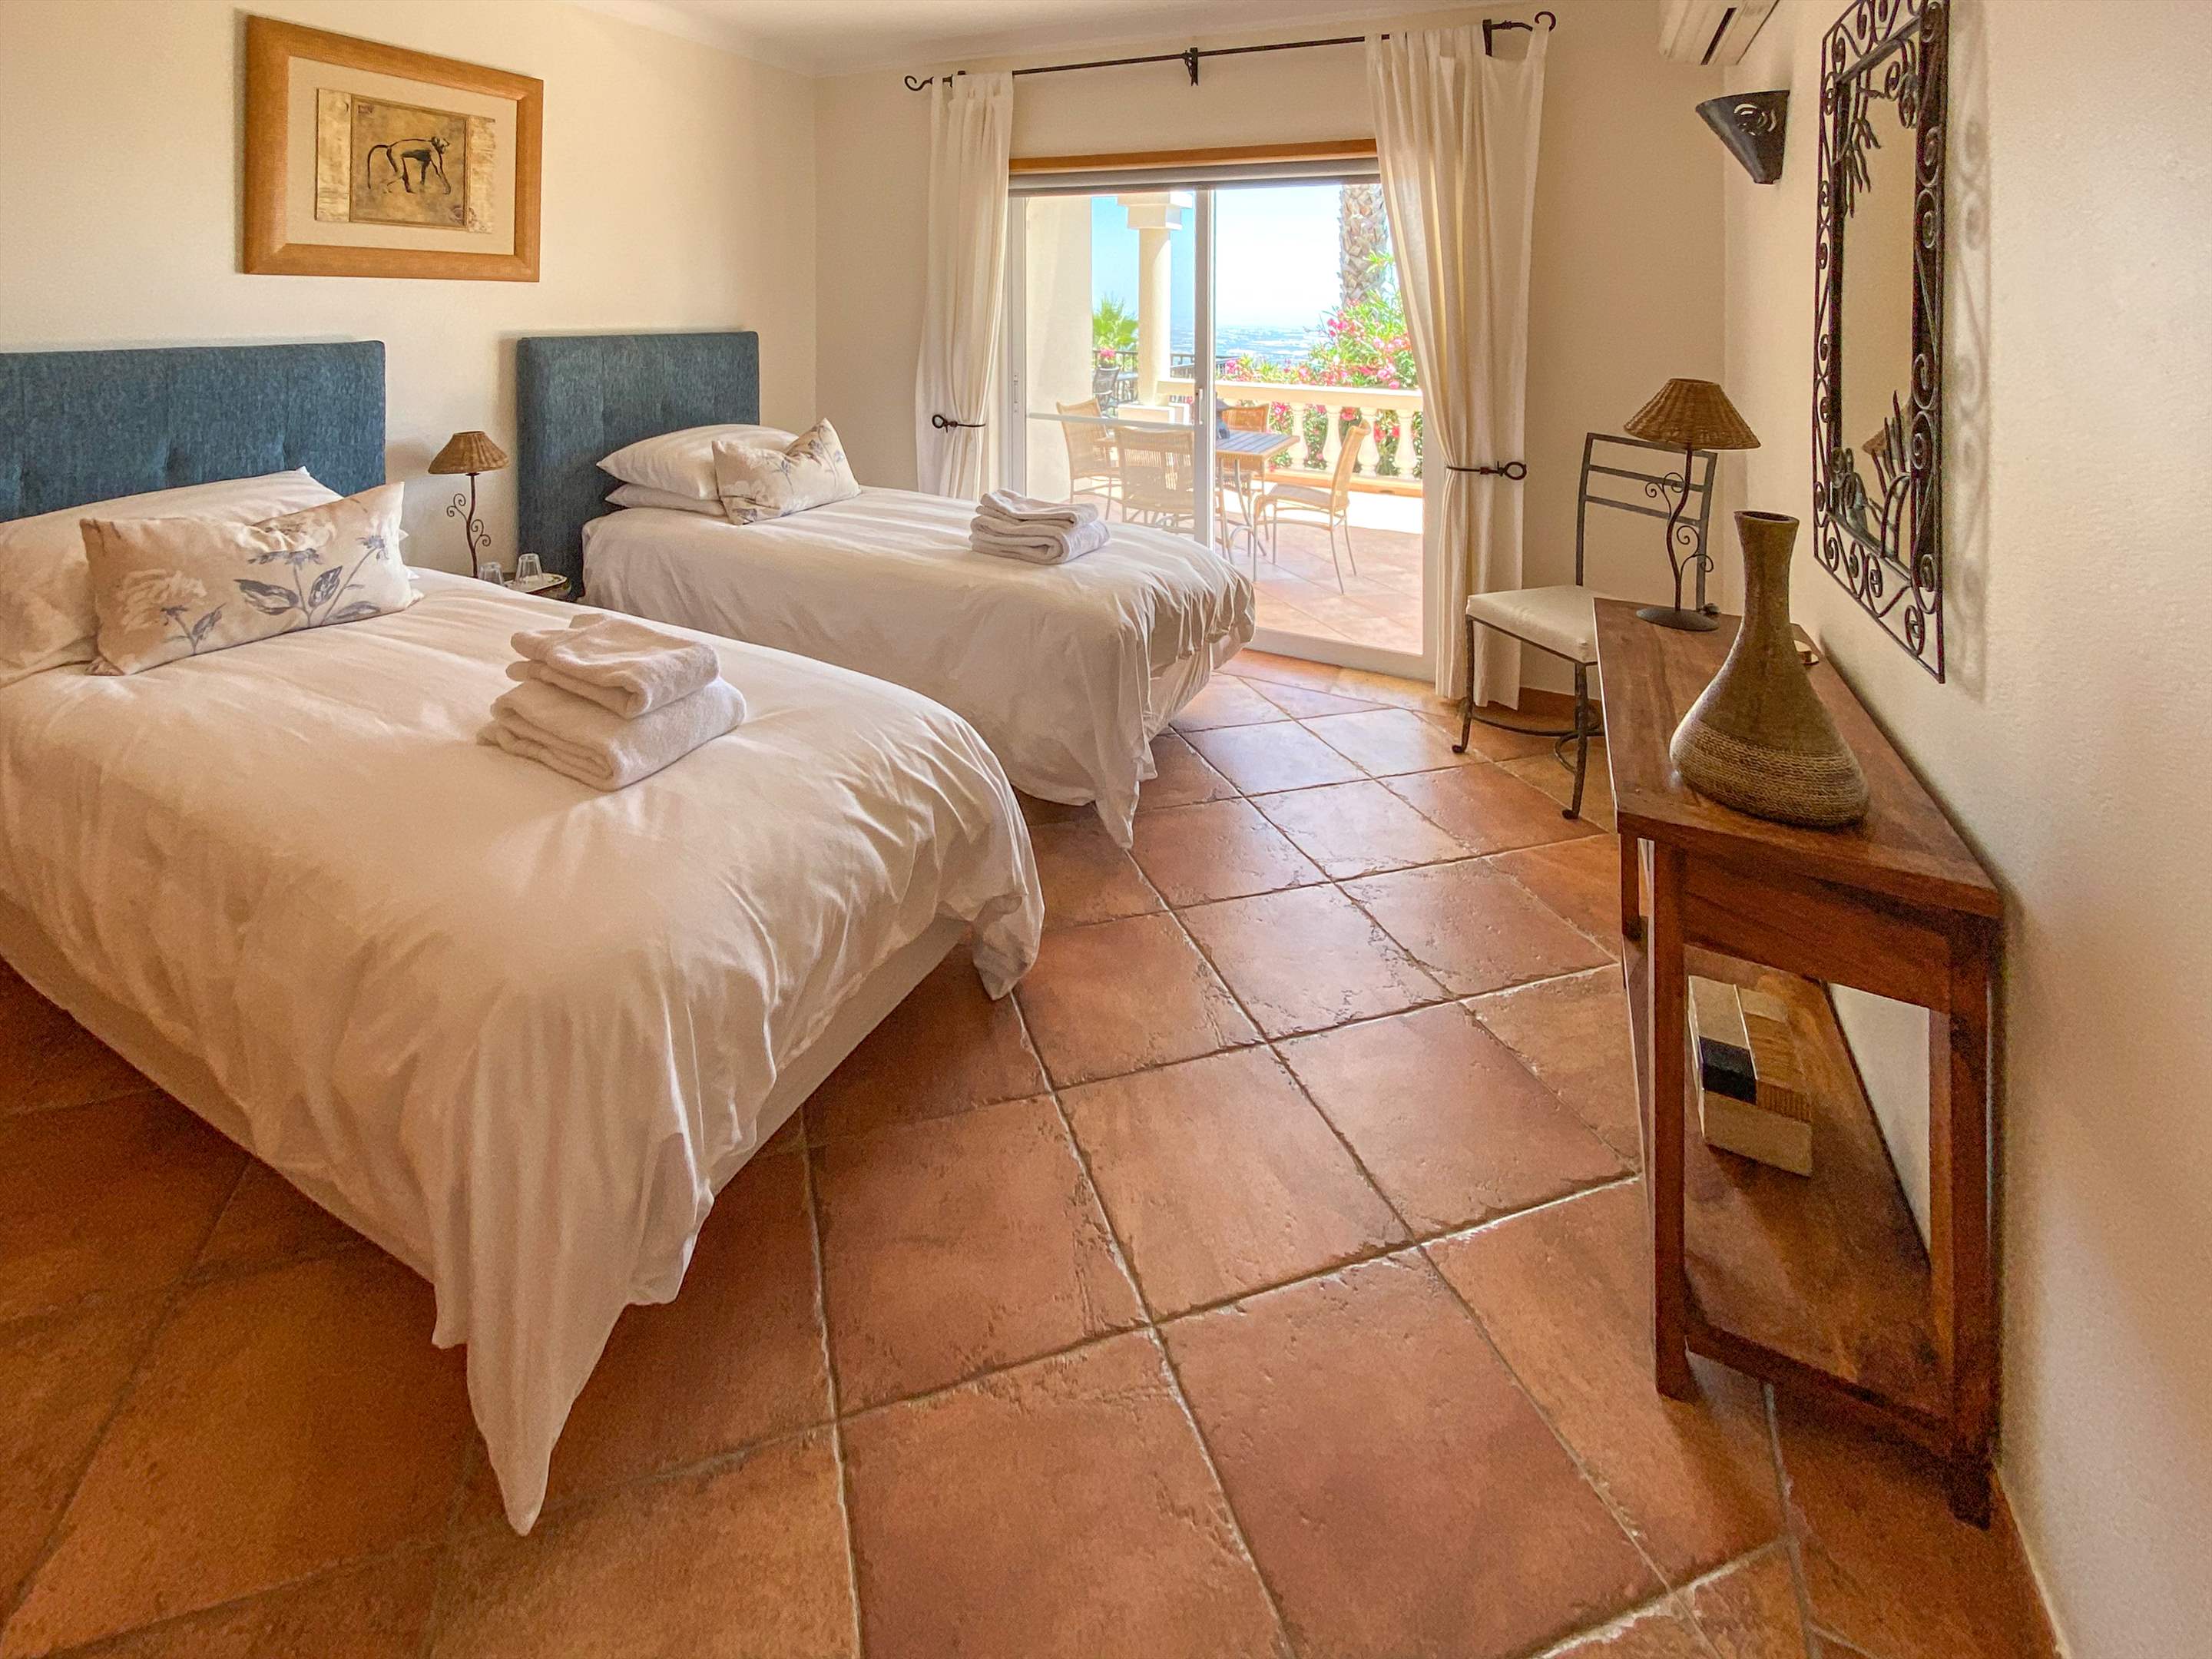 Villa Netuno, Five Bedroom Rate for 10 Persons, 5 bedroom villa in Algarve Countryside, Algarve Photo #27